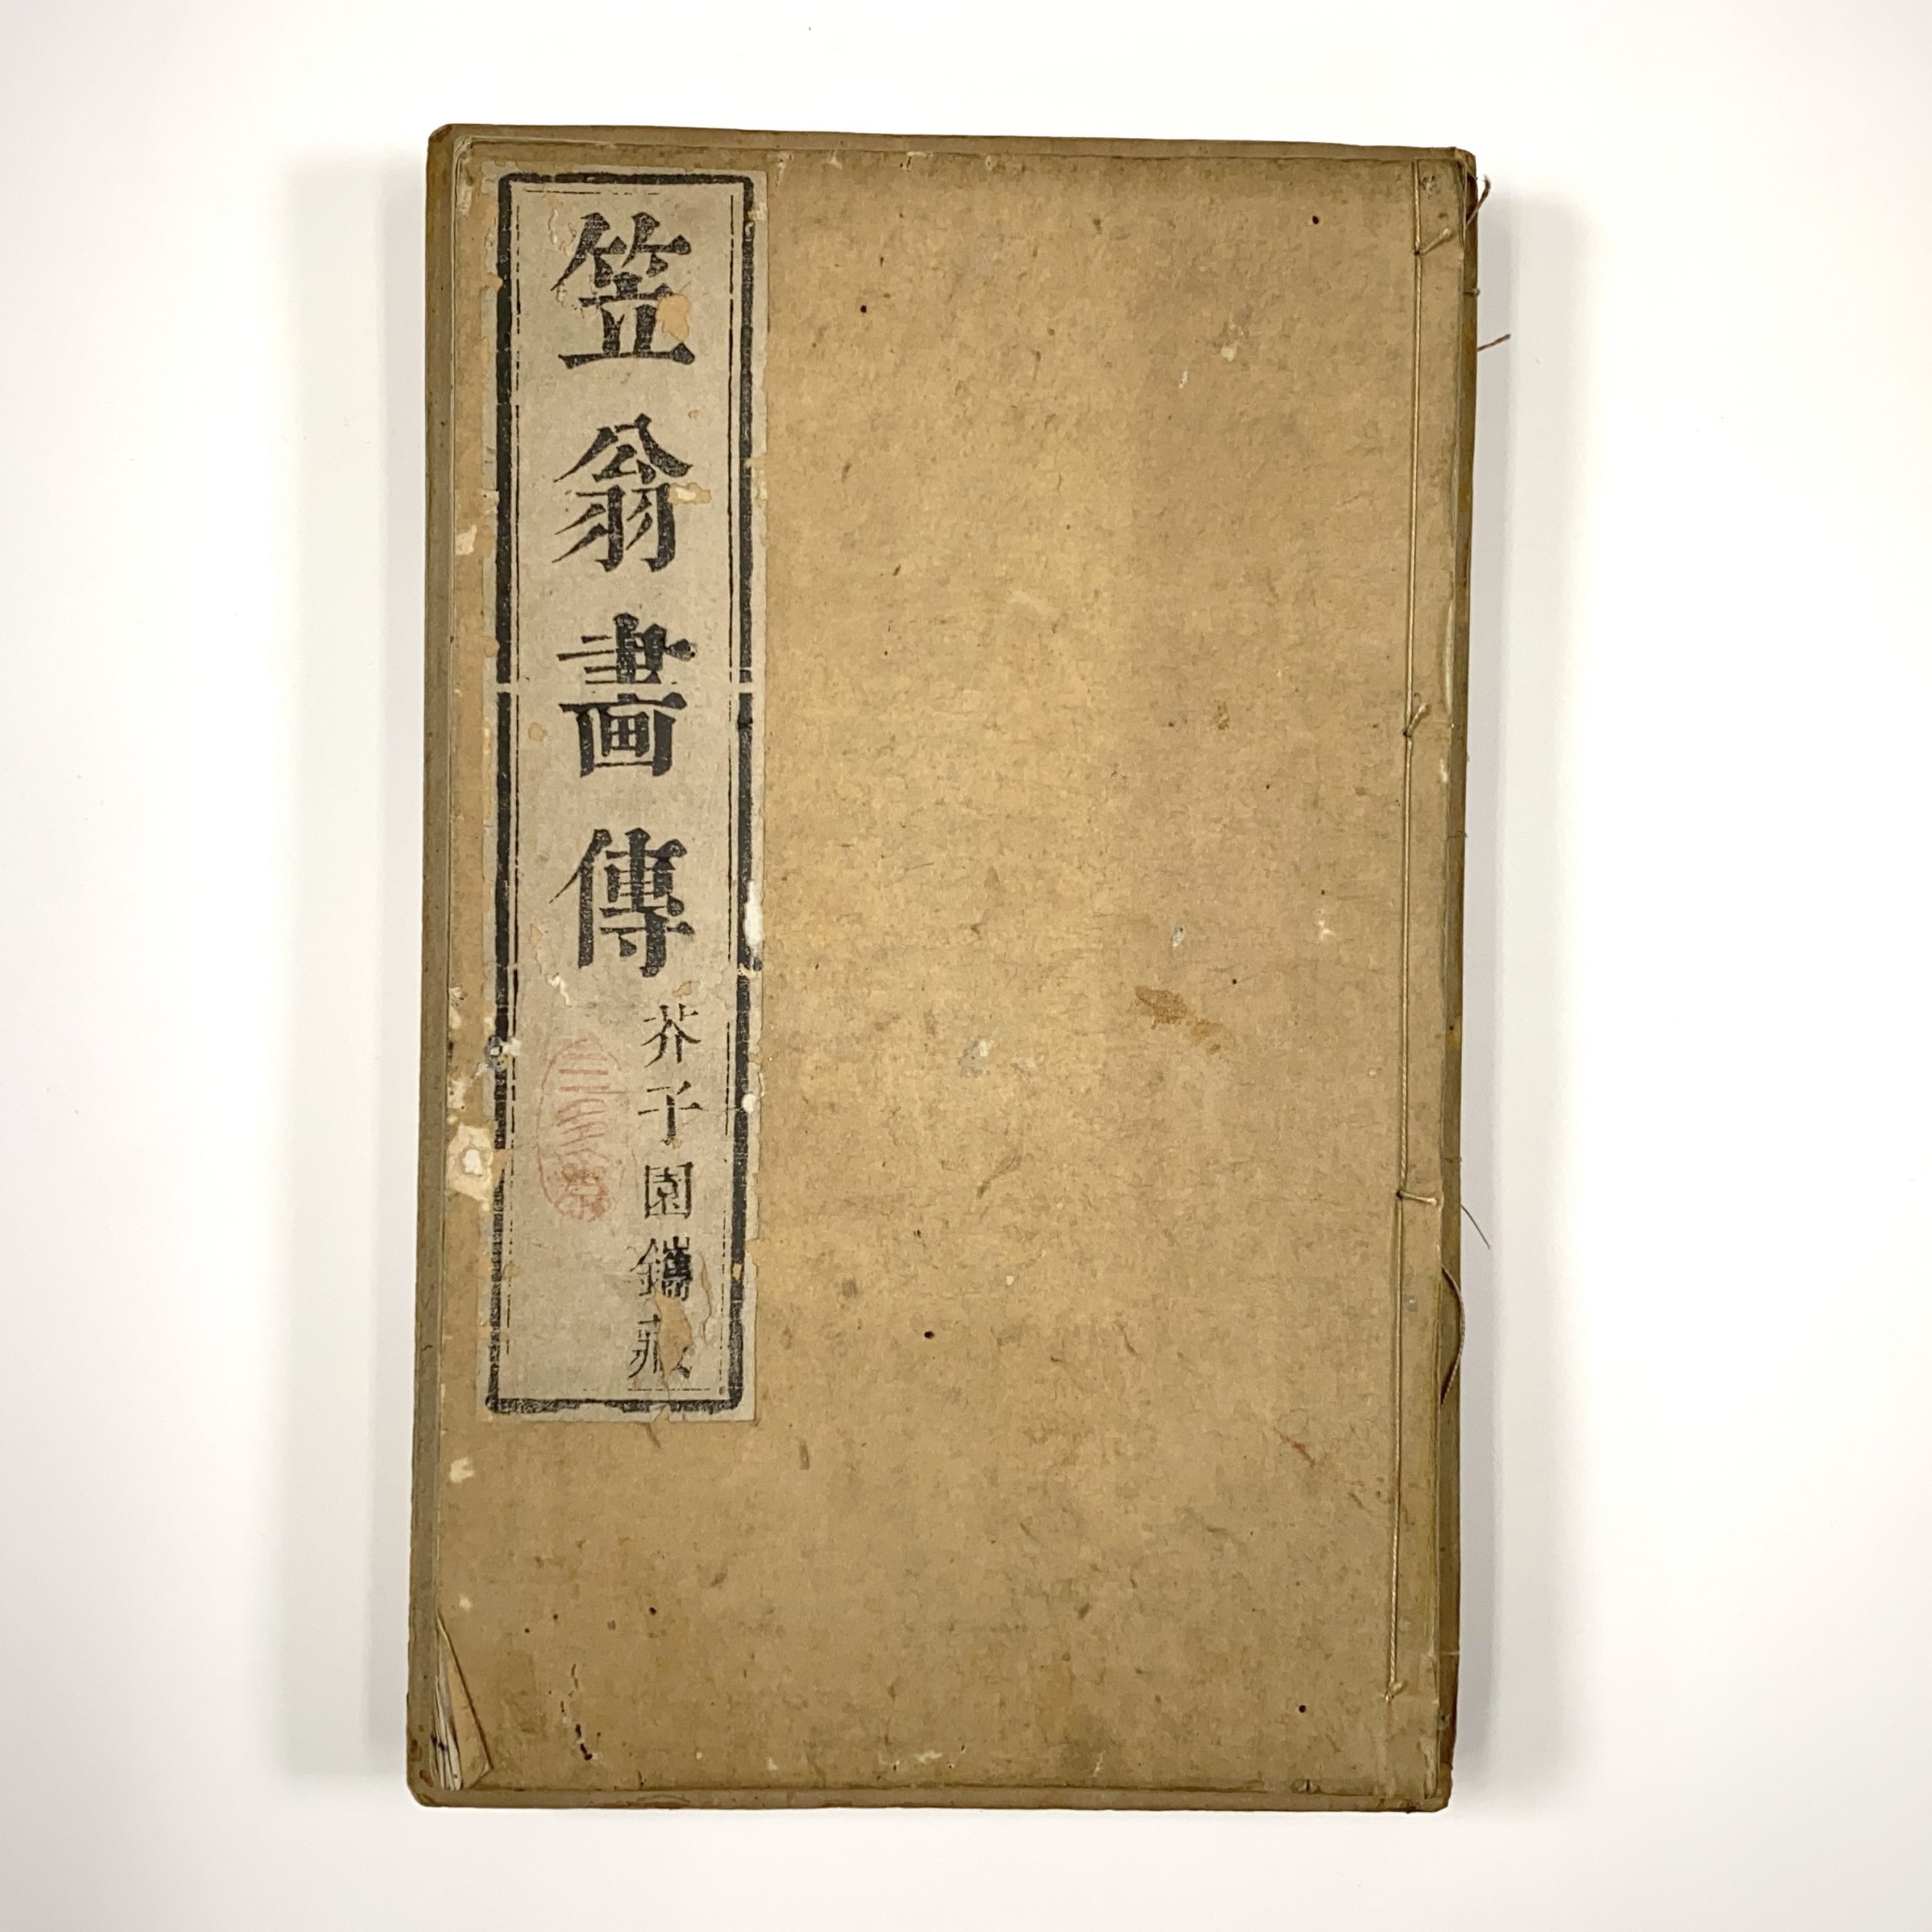 26700	「康煕十八年」款「芥子園画伝」5冊	25.5×15.5㎝